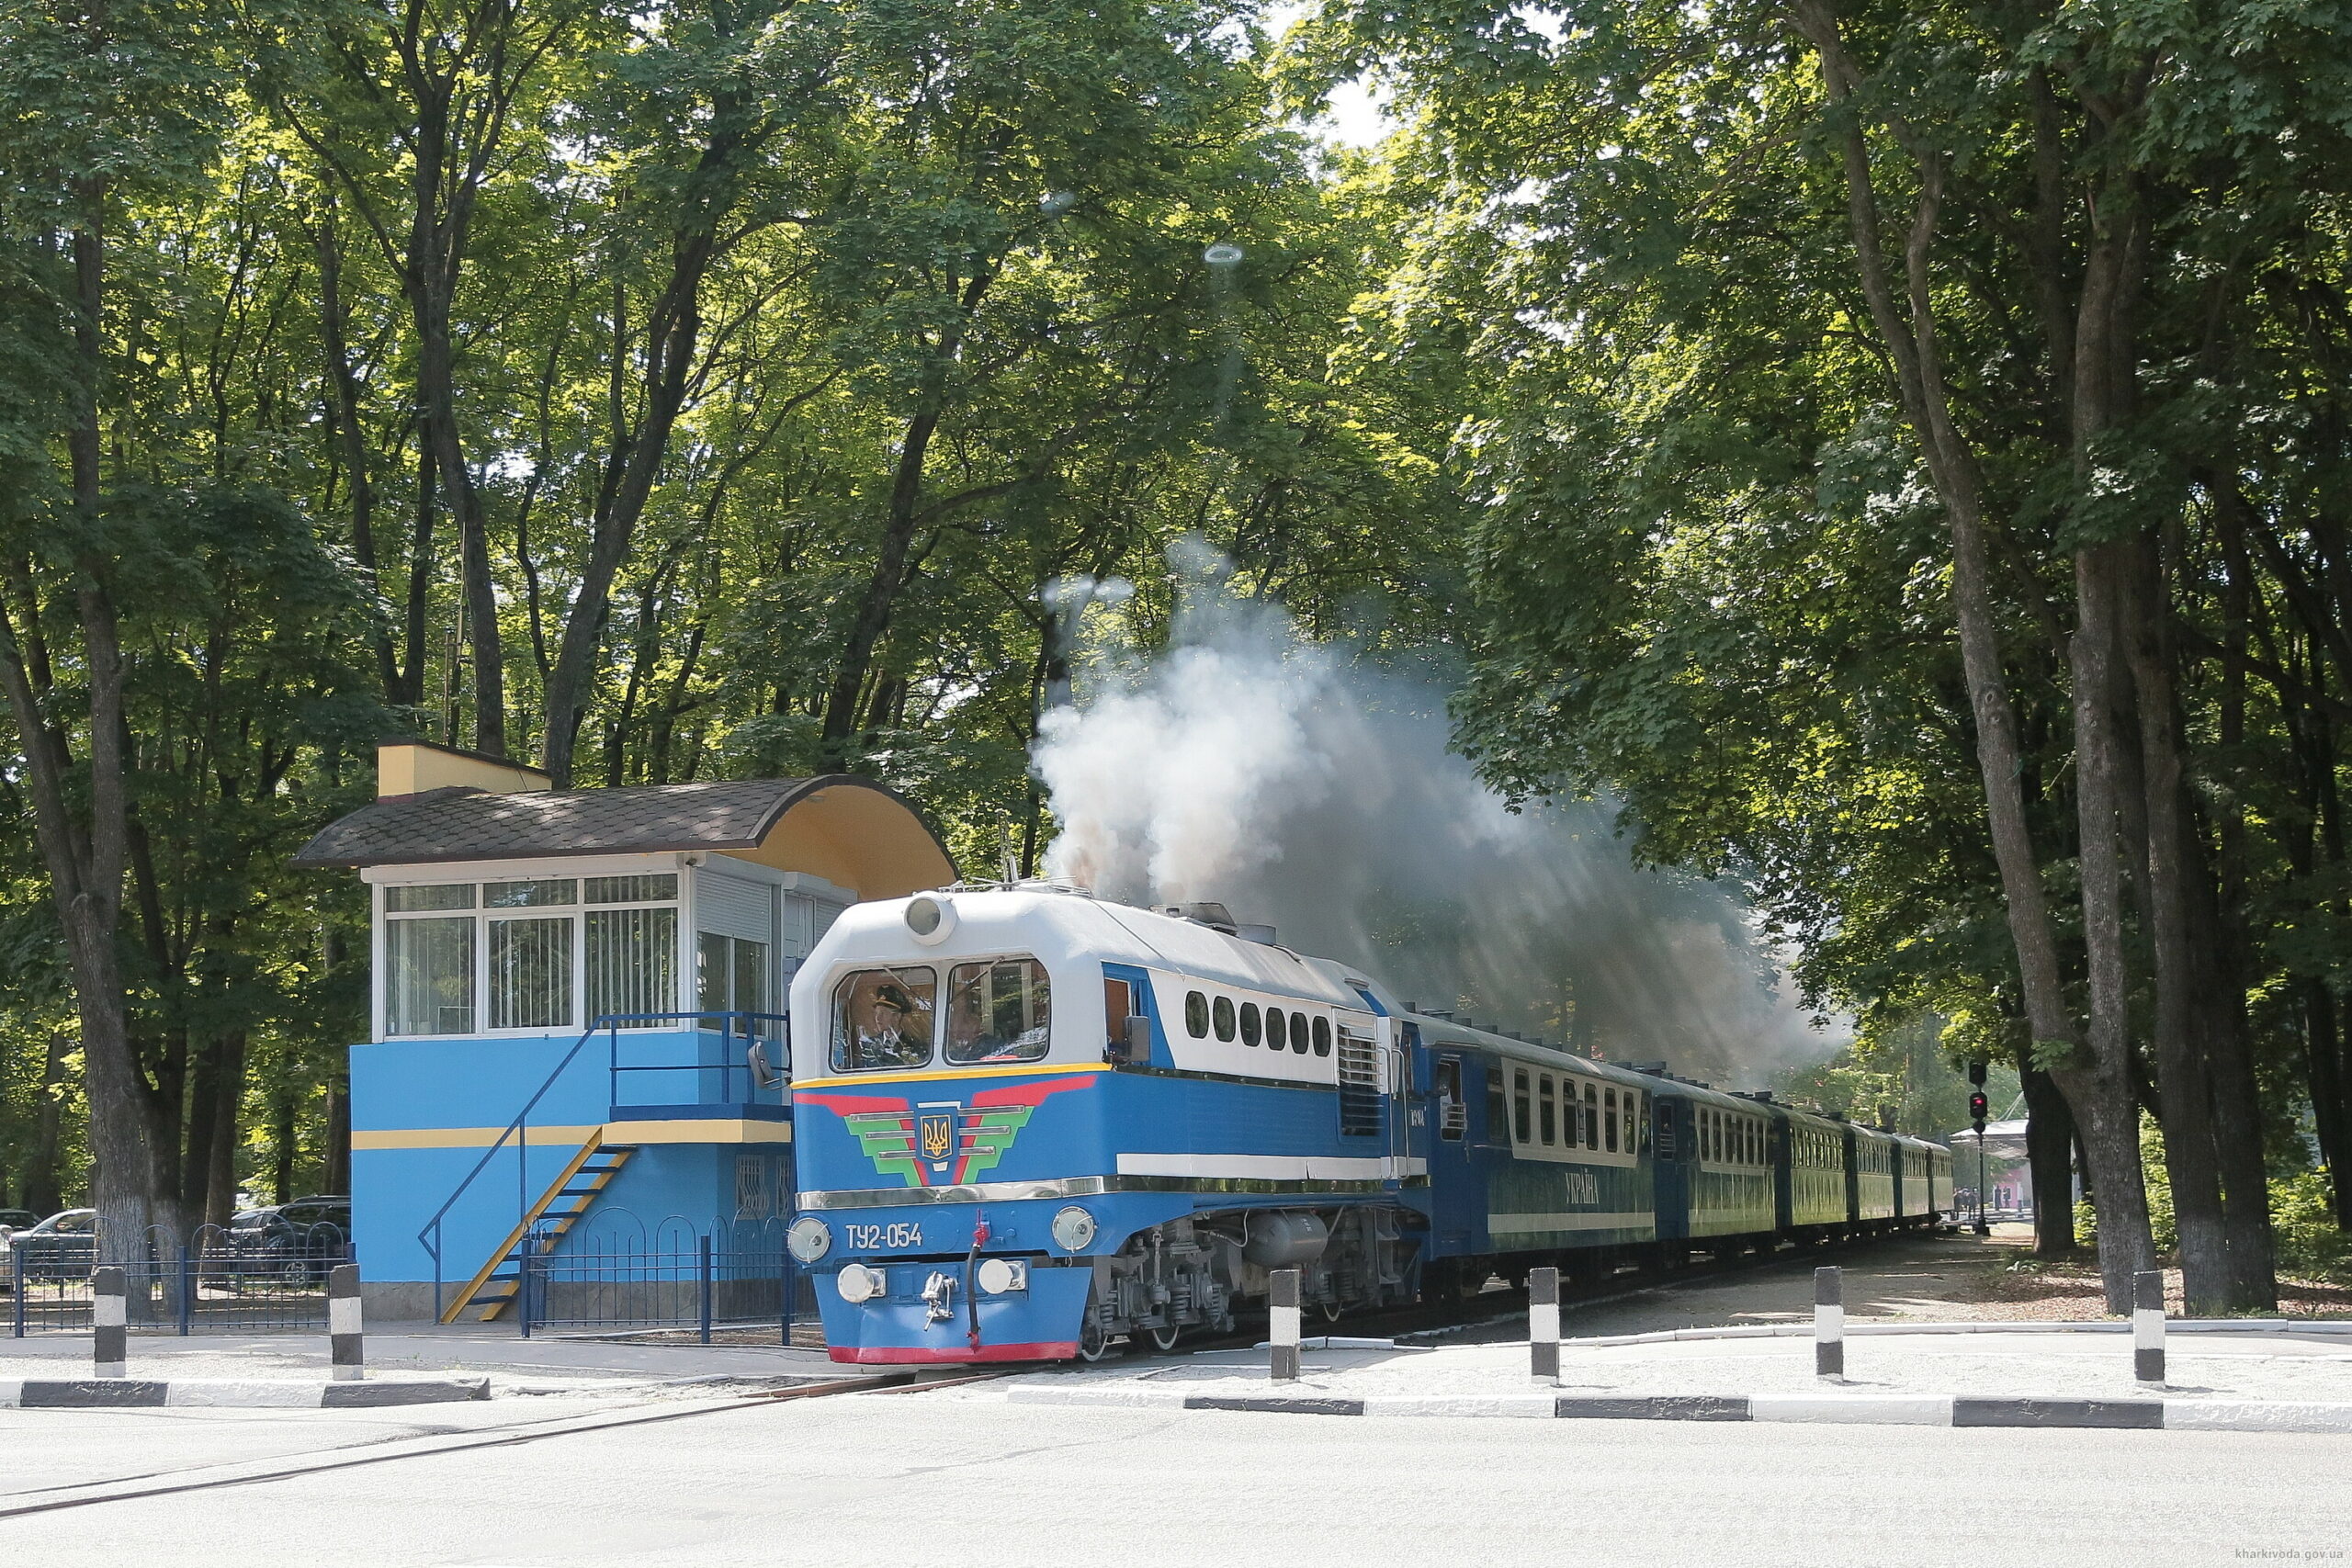 Ко Дню защиты детей: в Харькове открылась детская железная дорога (фото)